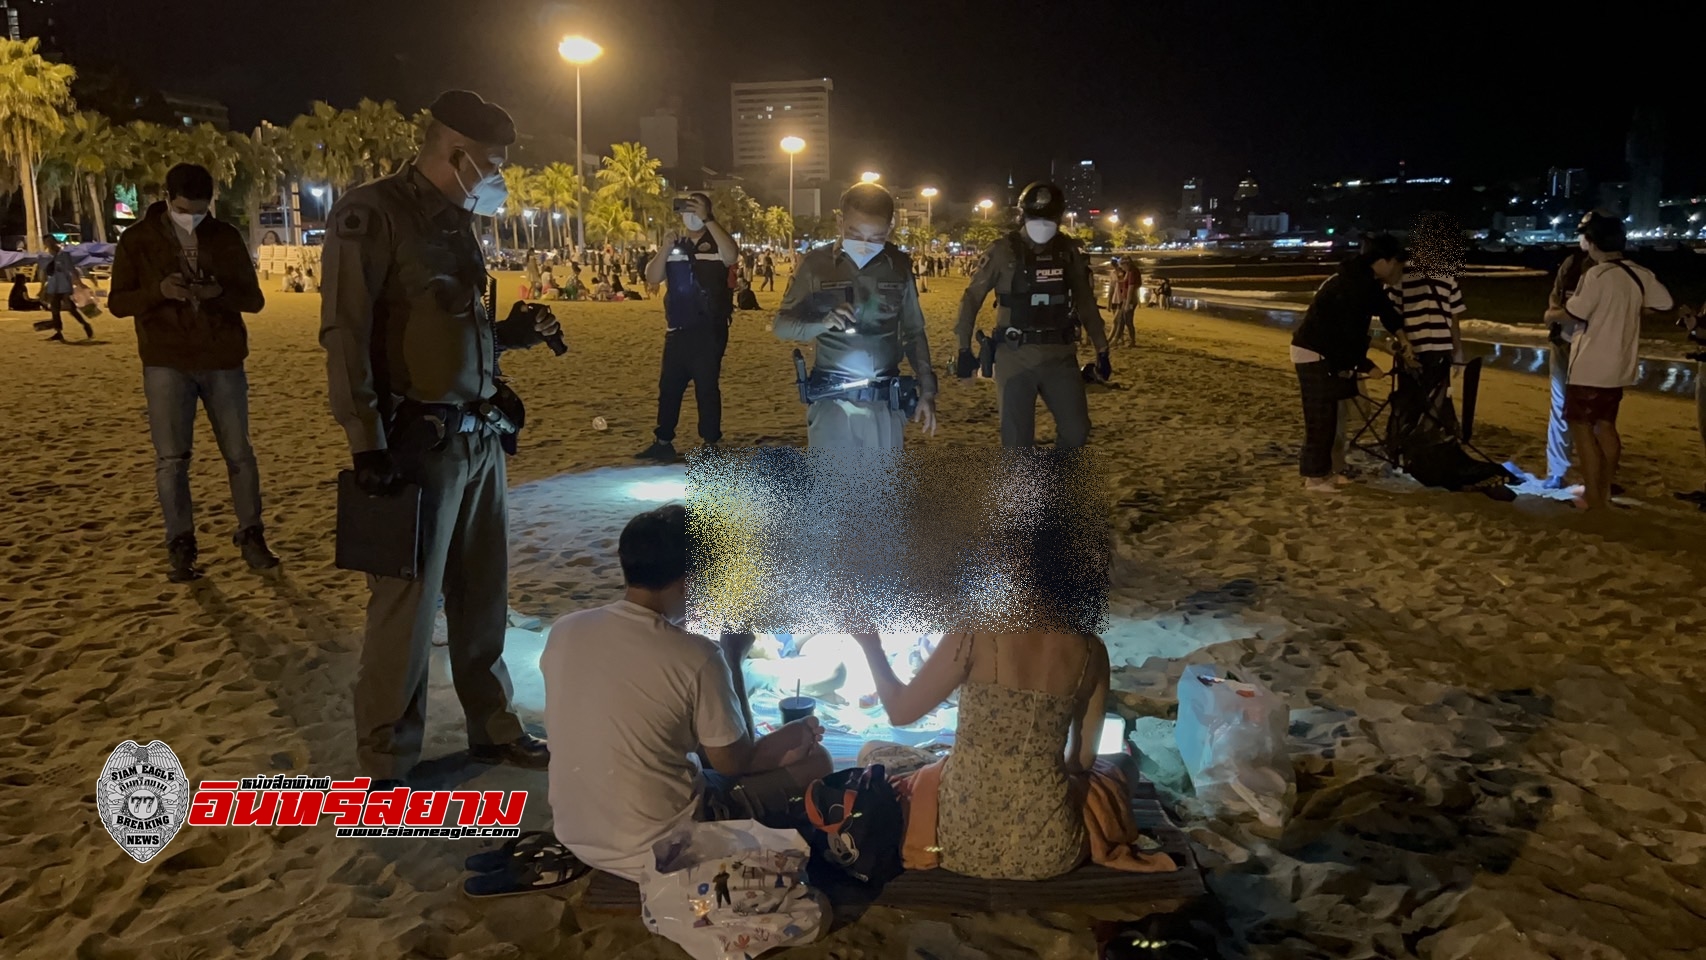 ชลบุรี-ตำรวจคุมเข้มหาดพัทยา หลังวัยรุ่นก่อเหตุรุนแรง